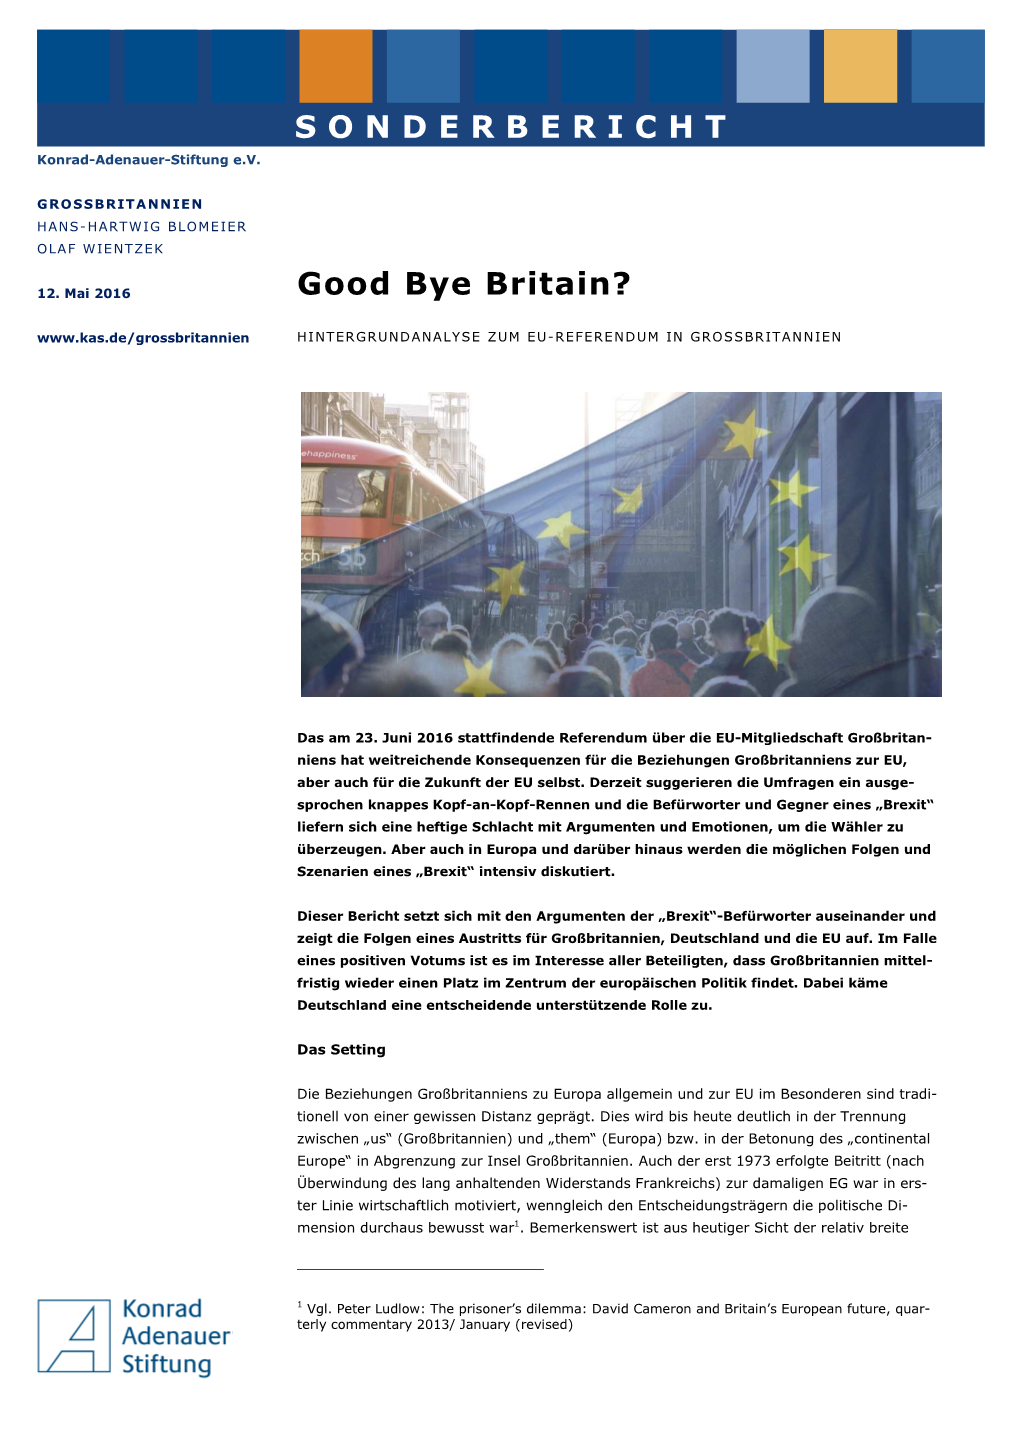 SONDERBERICHT Good Bye Britain?